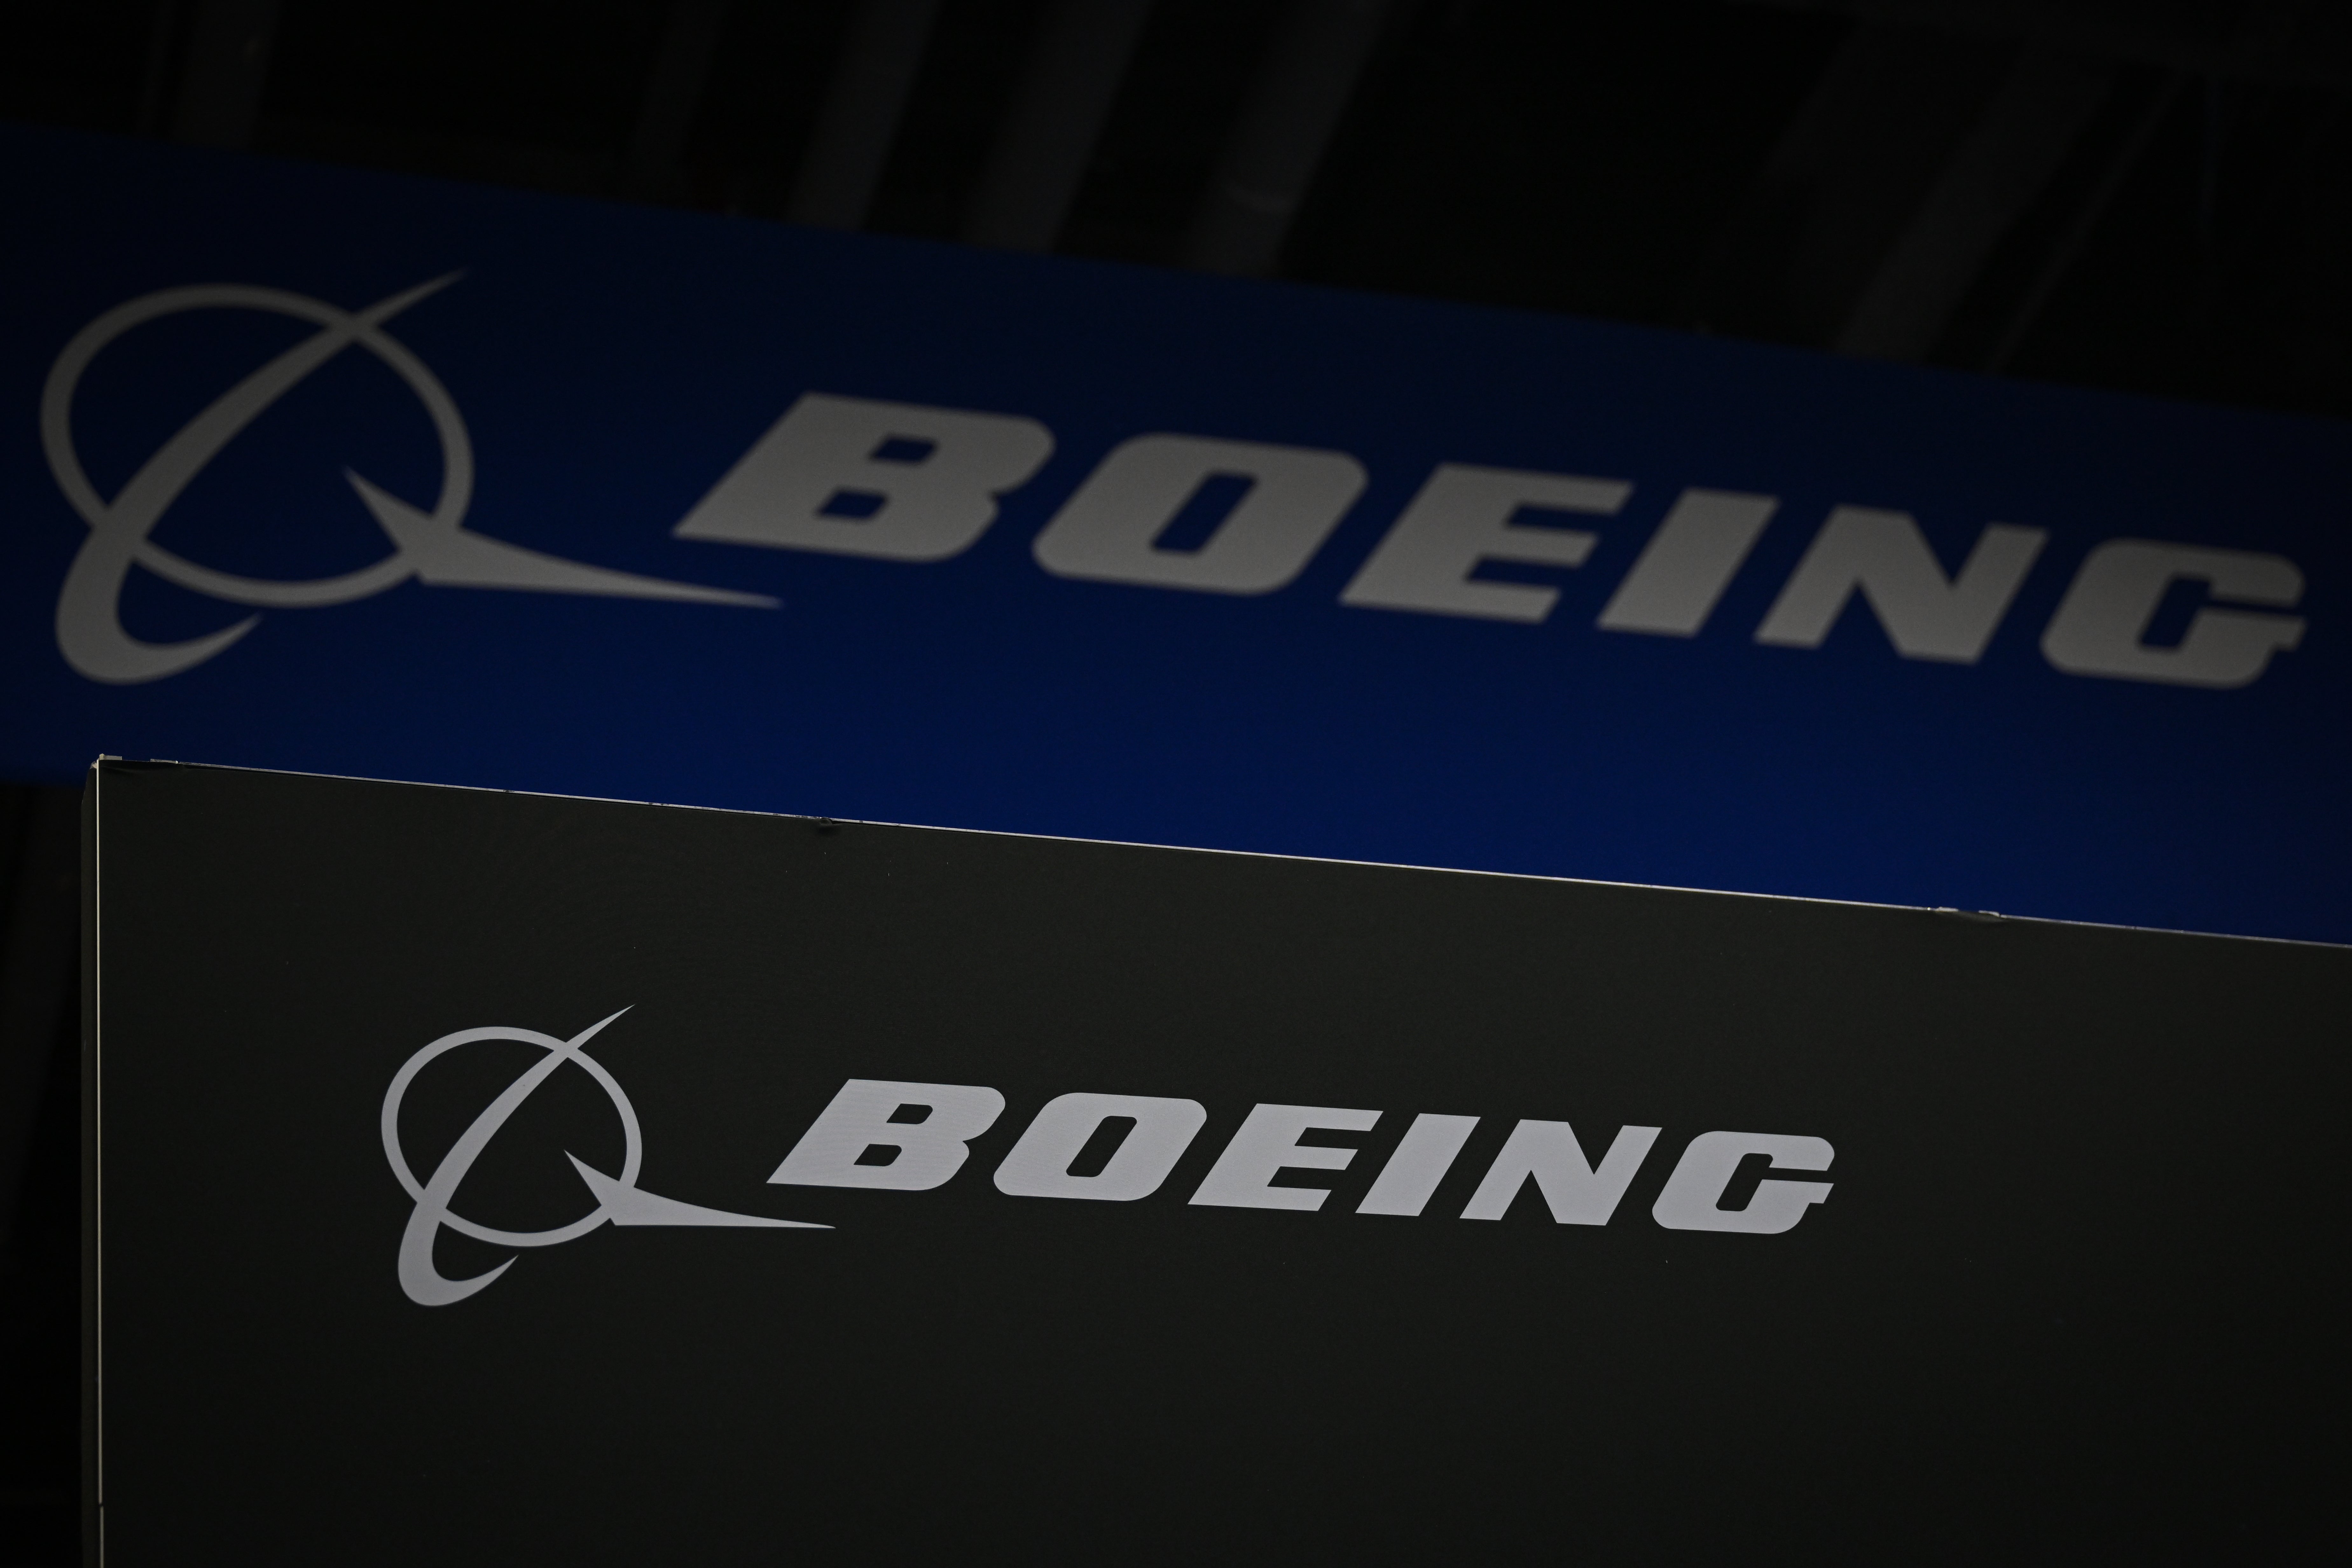 Boeing нарушил соглашение об избежании уголовного преследования, заявляет Минюст